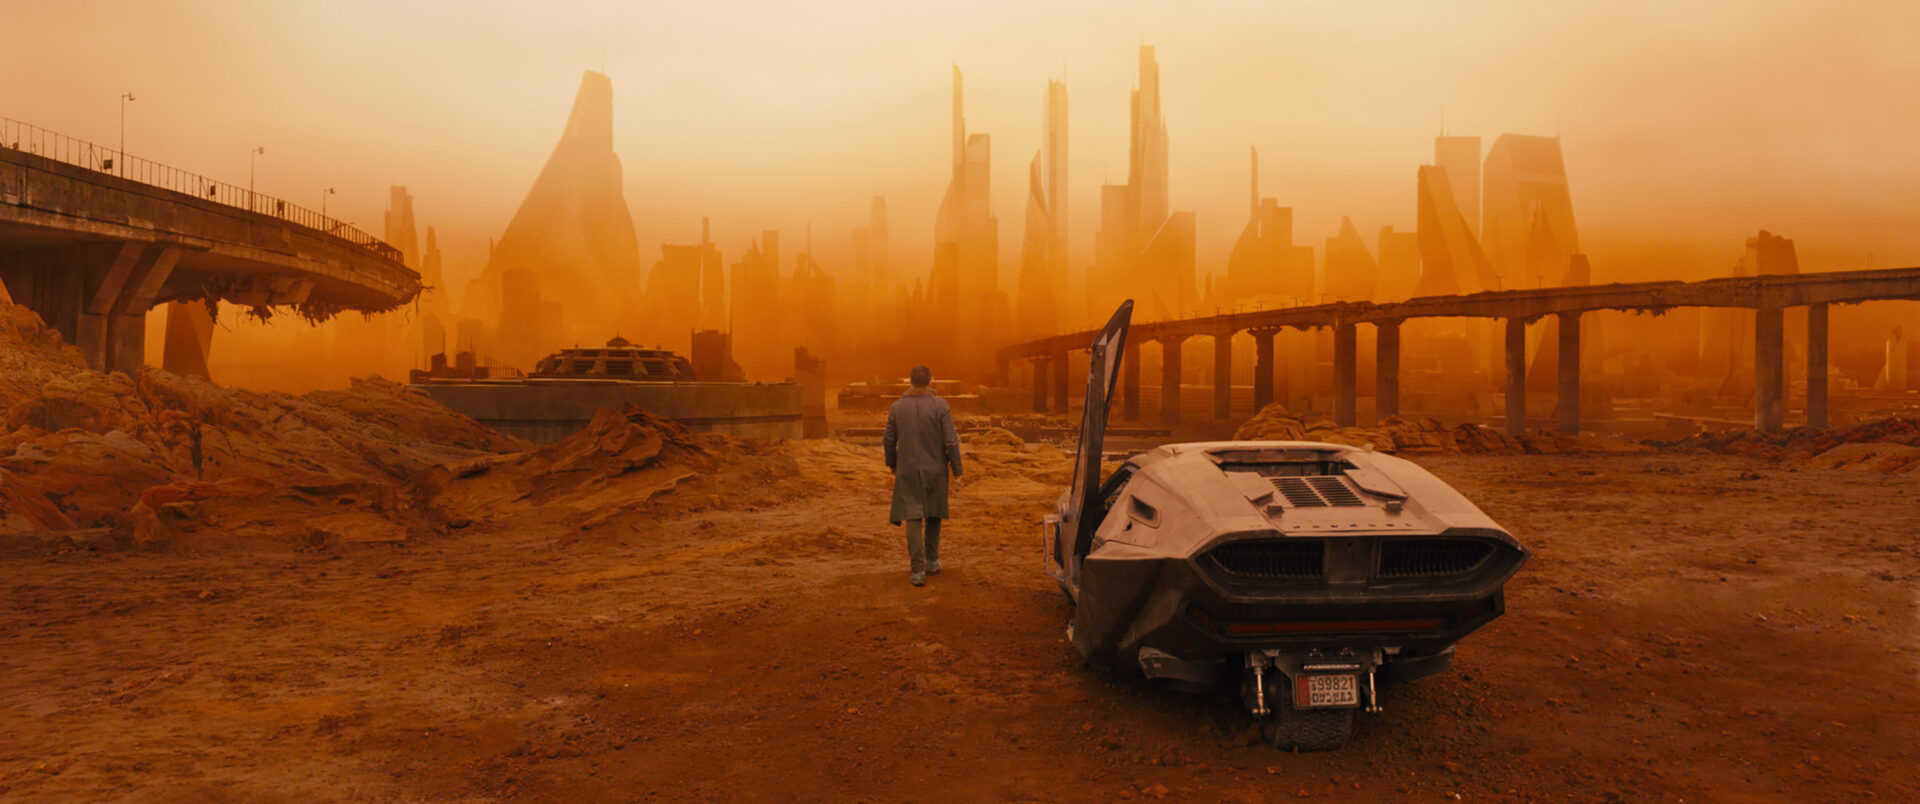 Blade Runner 2049: Das Bild zeigt einen Mann, der gerade aus einem futuristischen Auto gestiegen ist. Die Tür davon steht noch offen. Er geht auf eine tote Stadt zu, die in einem orangen Nebel verschwimmt